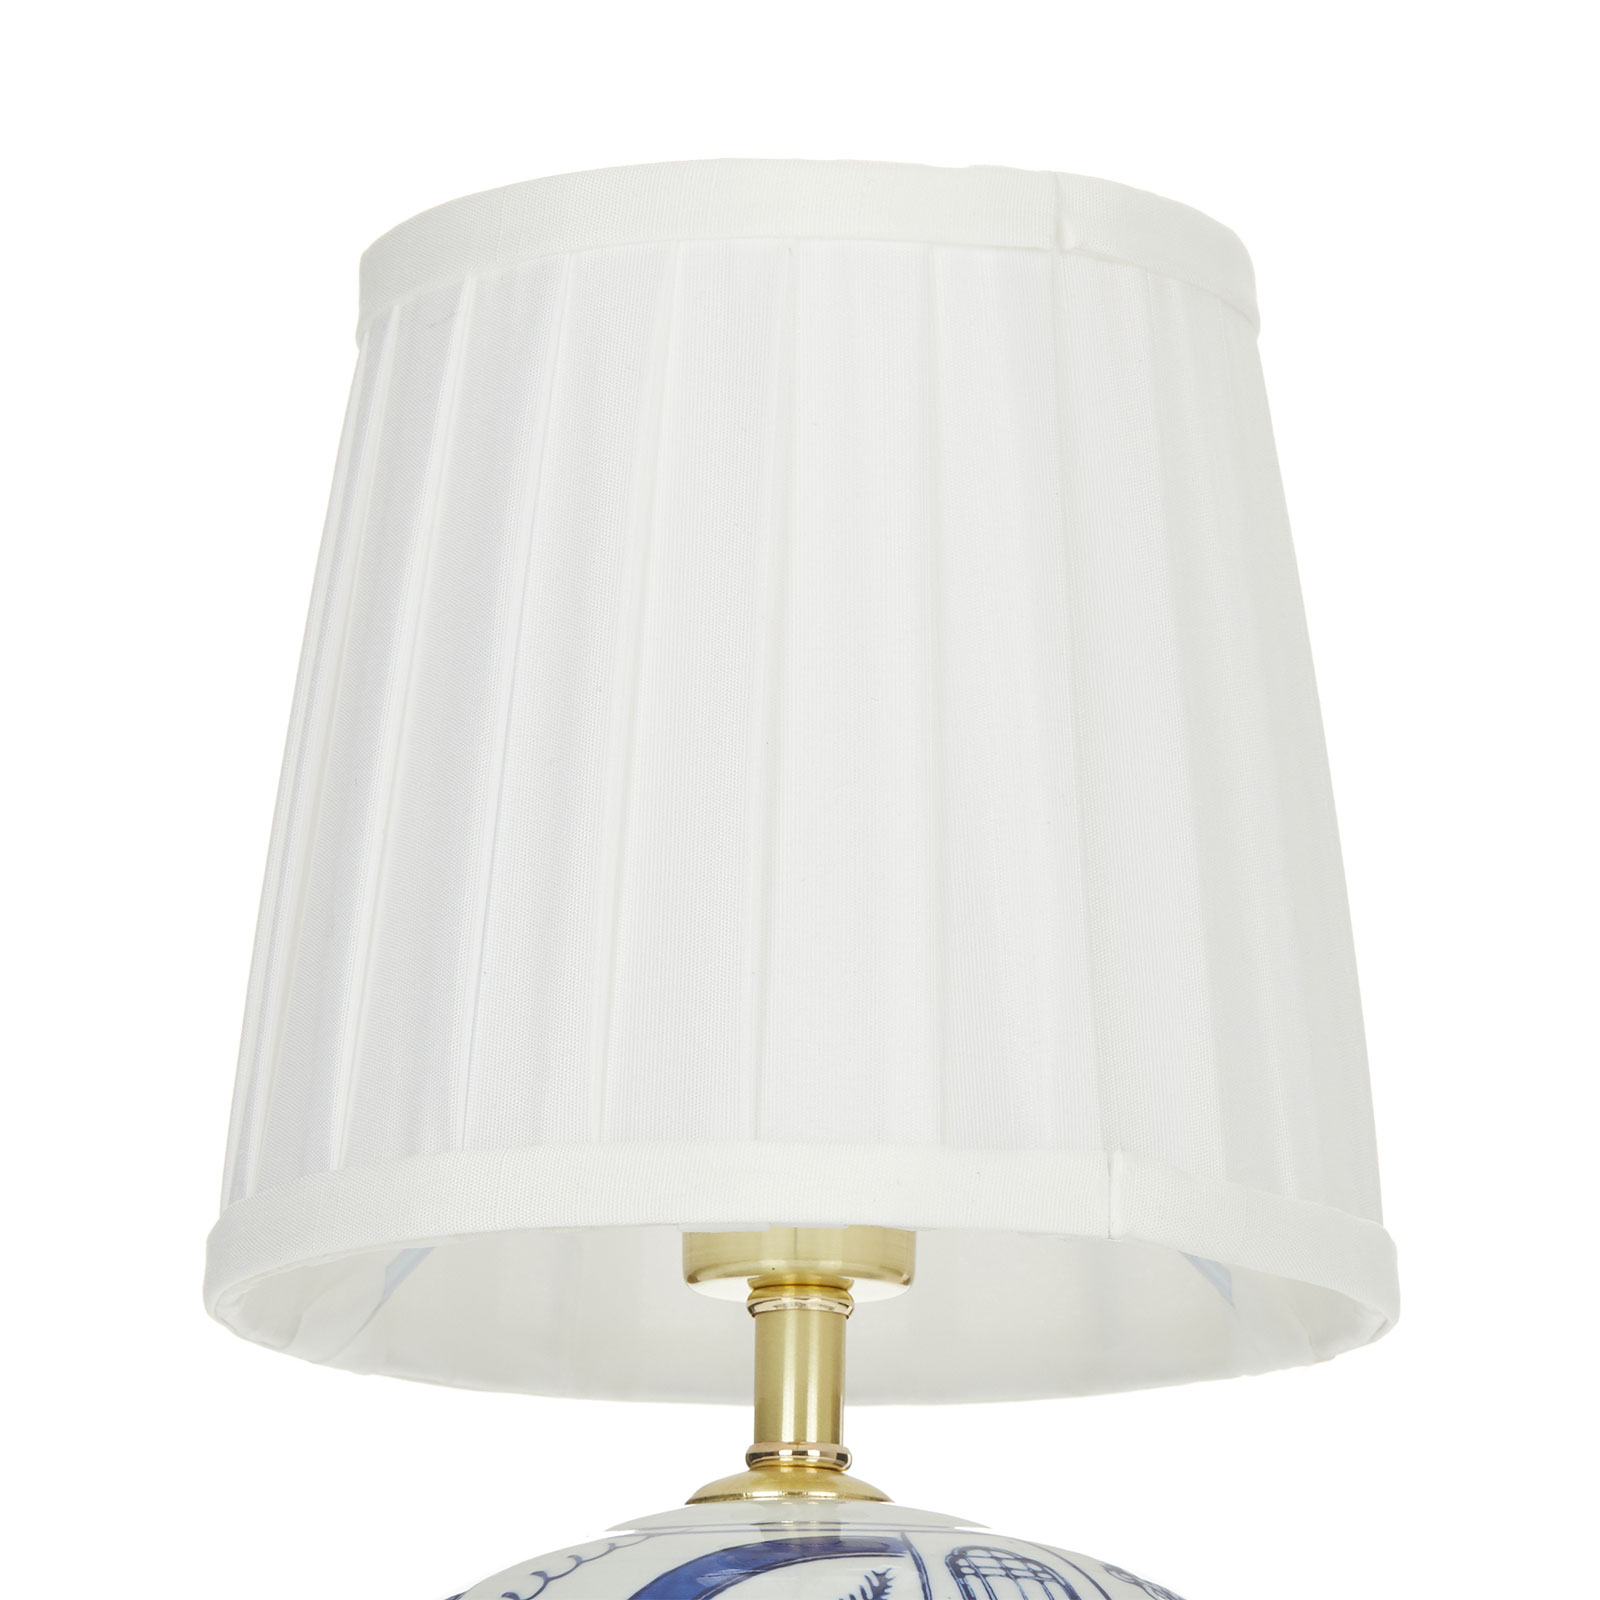 Classic table lamp Göteborg 32.5 cm